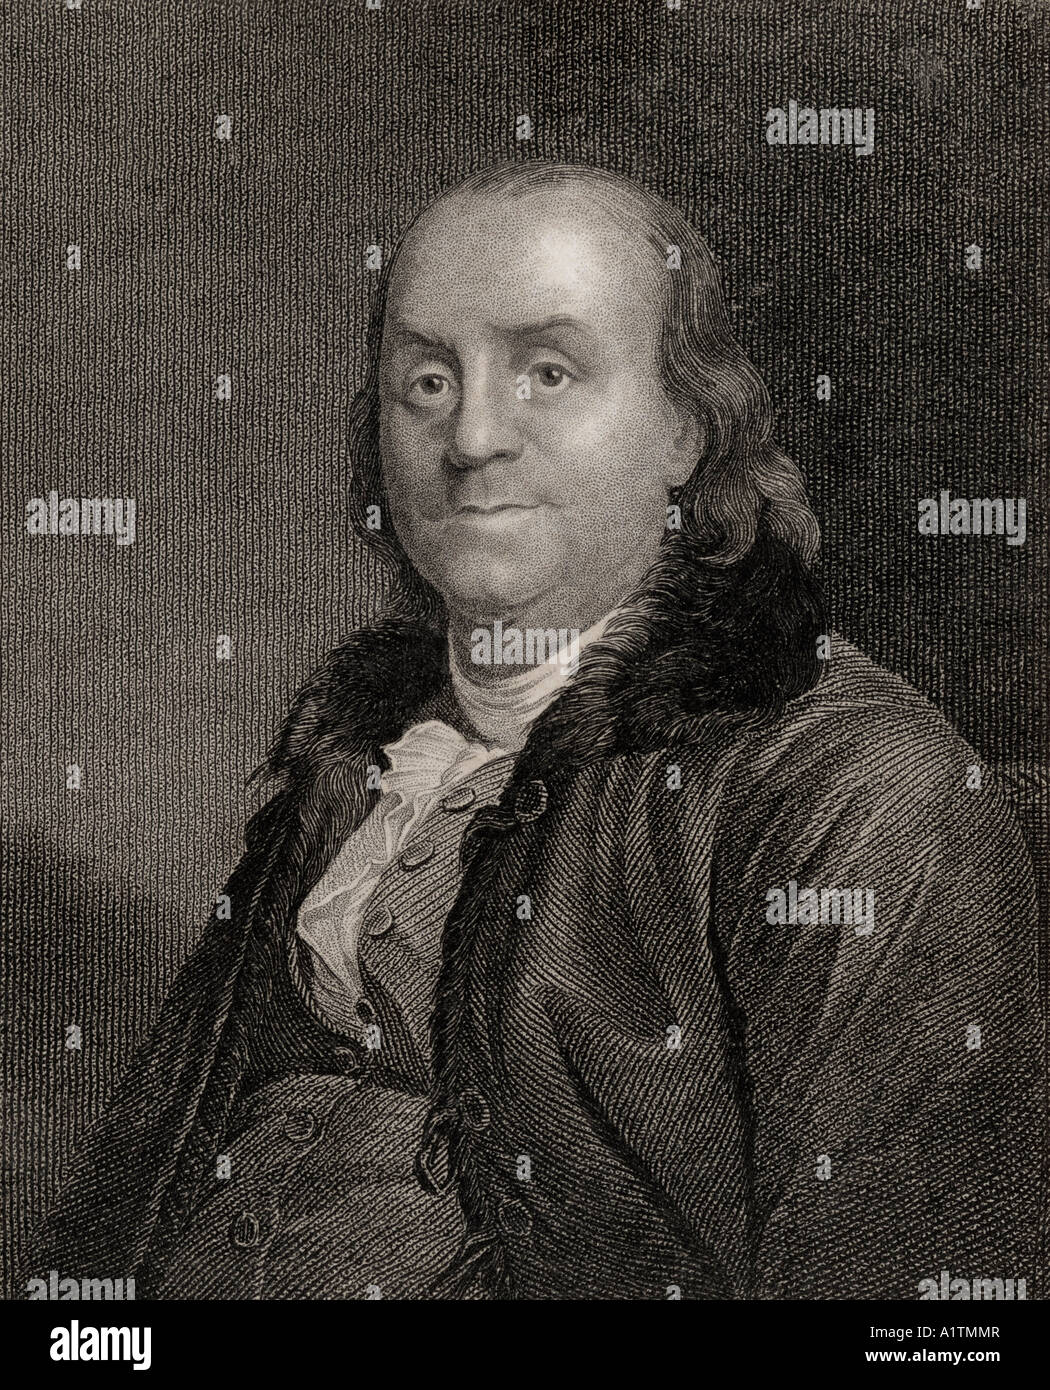 Benjamin Franklin, 1706 - 1790. Auteur américain, politicien, imprimeur, scientifique, philosophe, éditeur, inventeur, militant civique et diplomate. Banque D'Images